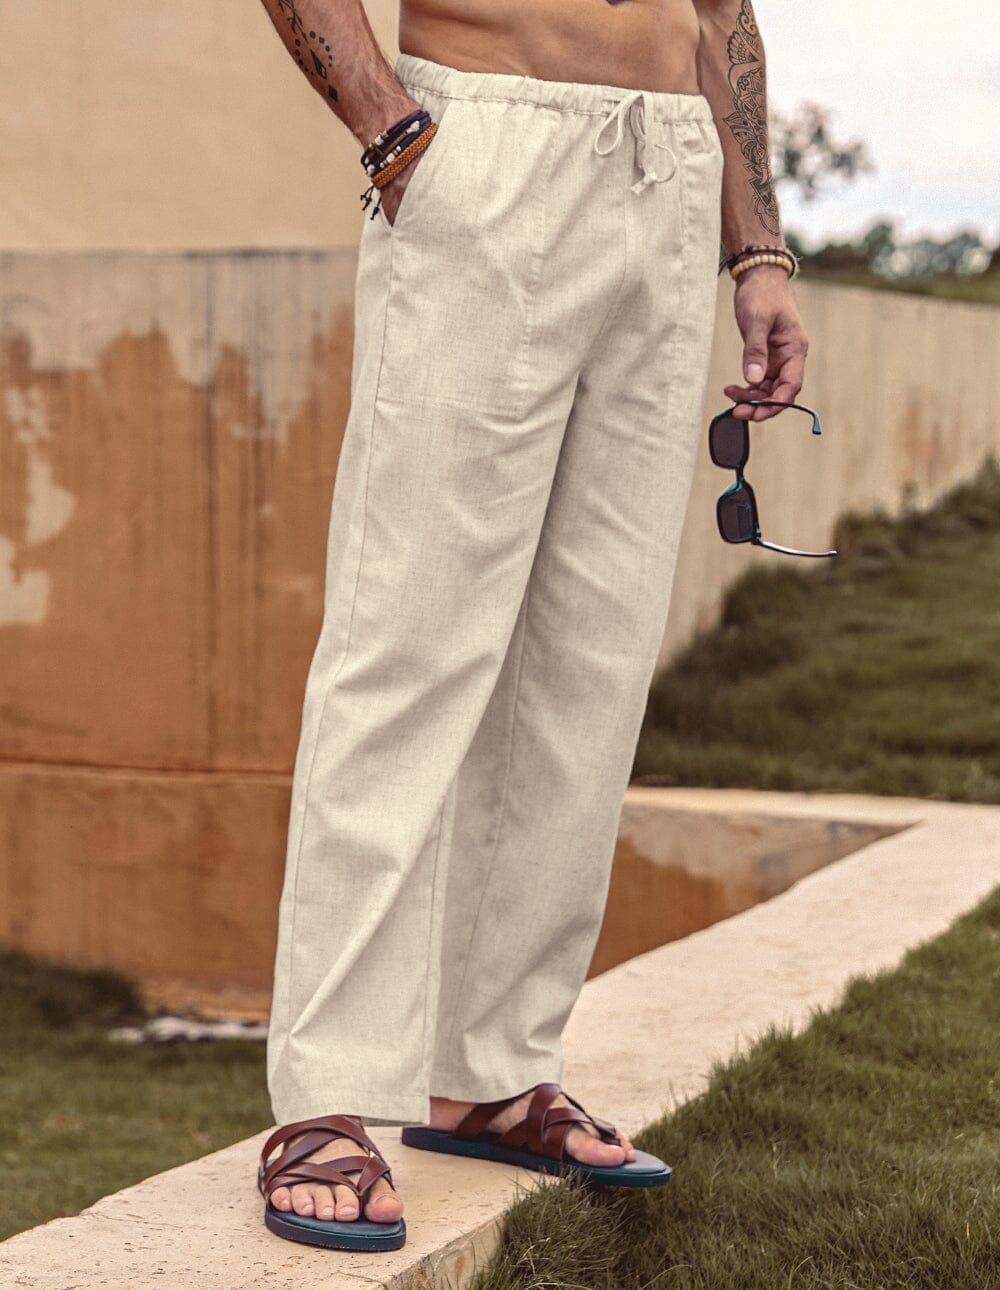 Coofandy Linen Style Elastic Waist Yoga Pants (US Only) Pants coofandy 